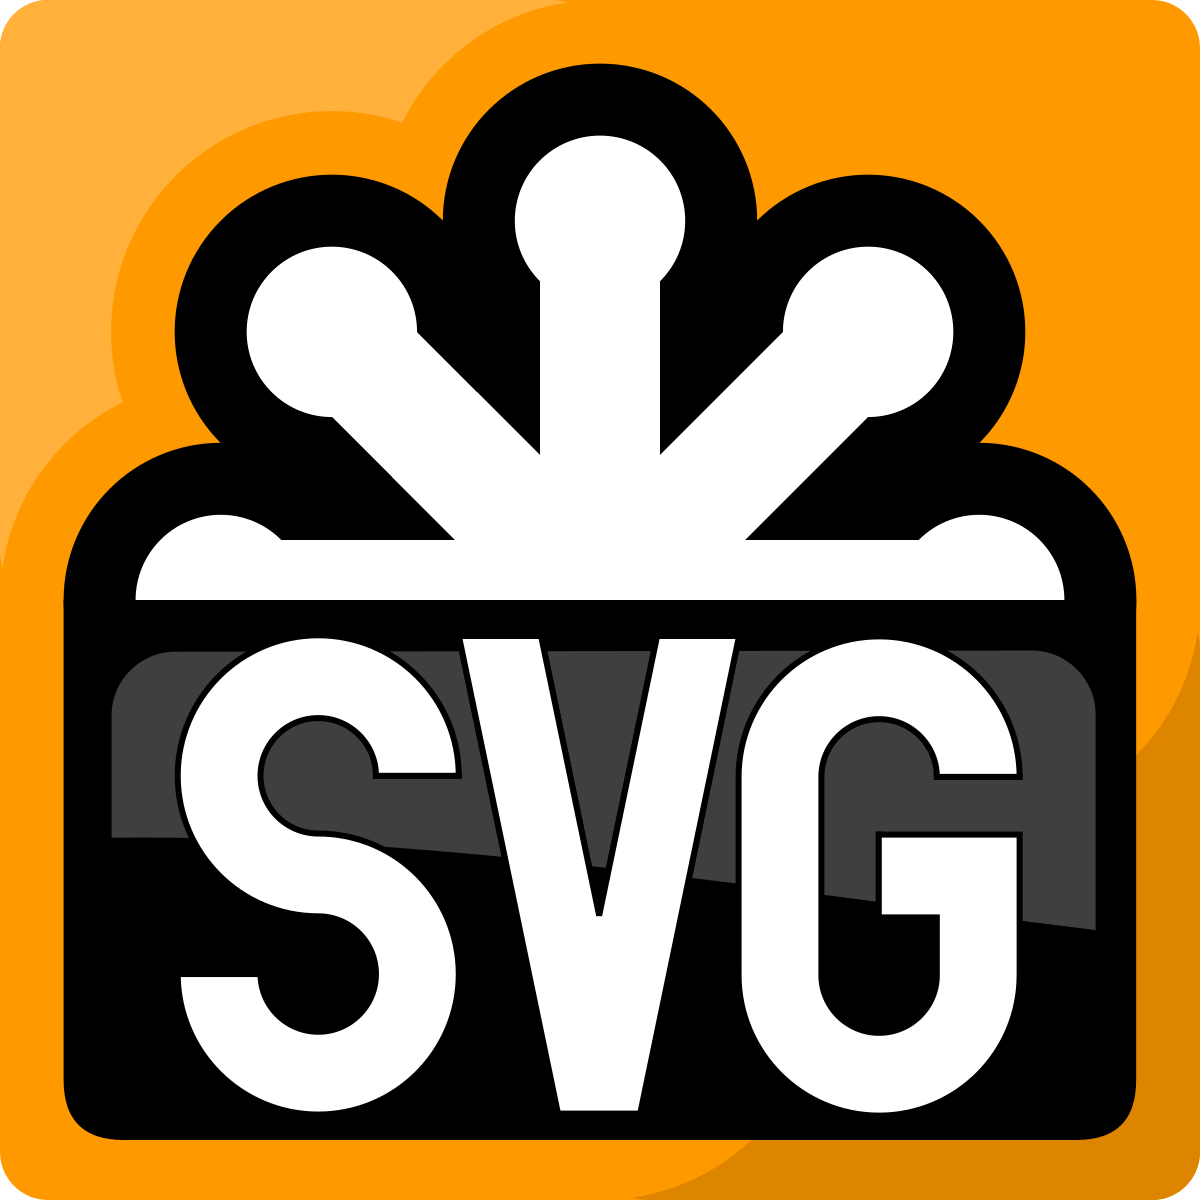 Загрузить svg. Svg изображения. Svg Формат. X svg. Логотип.